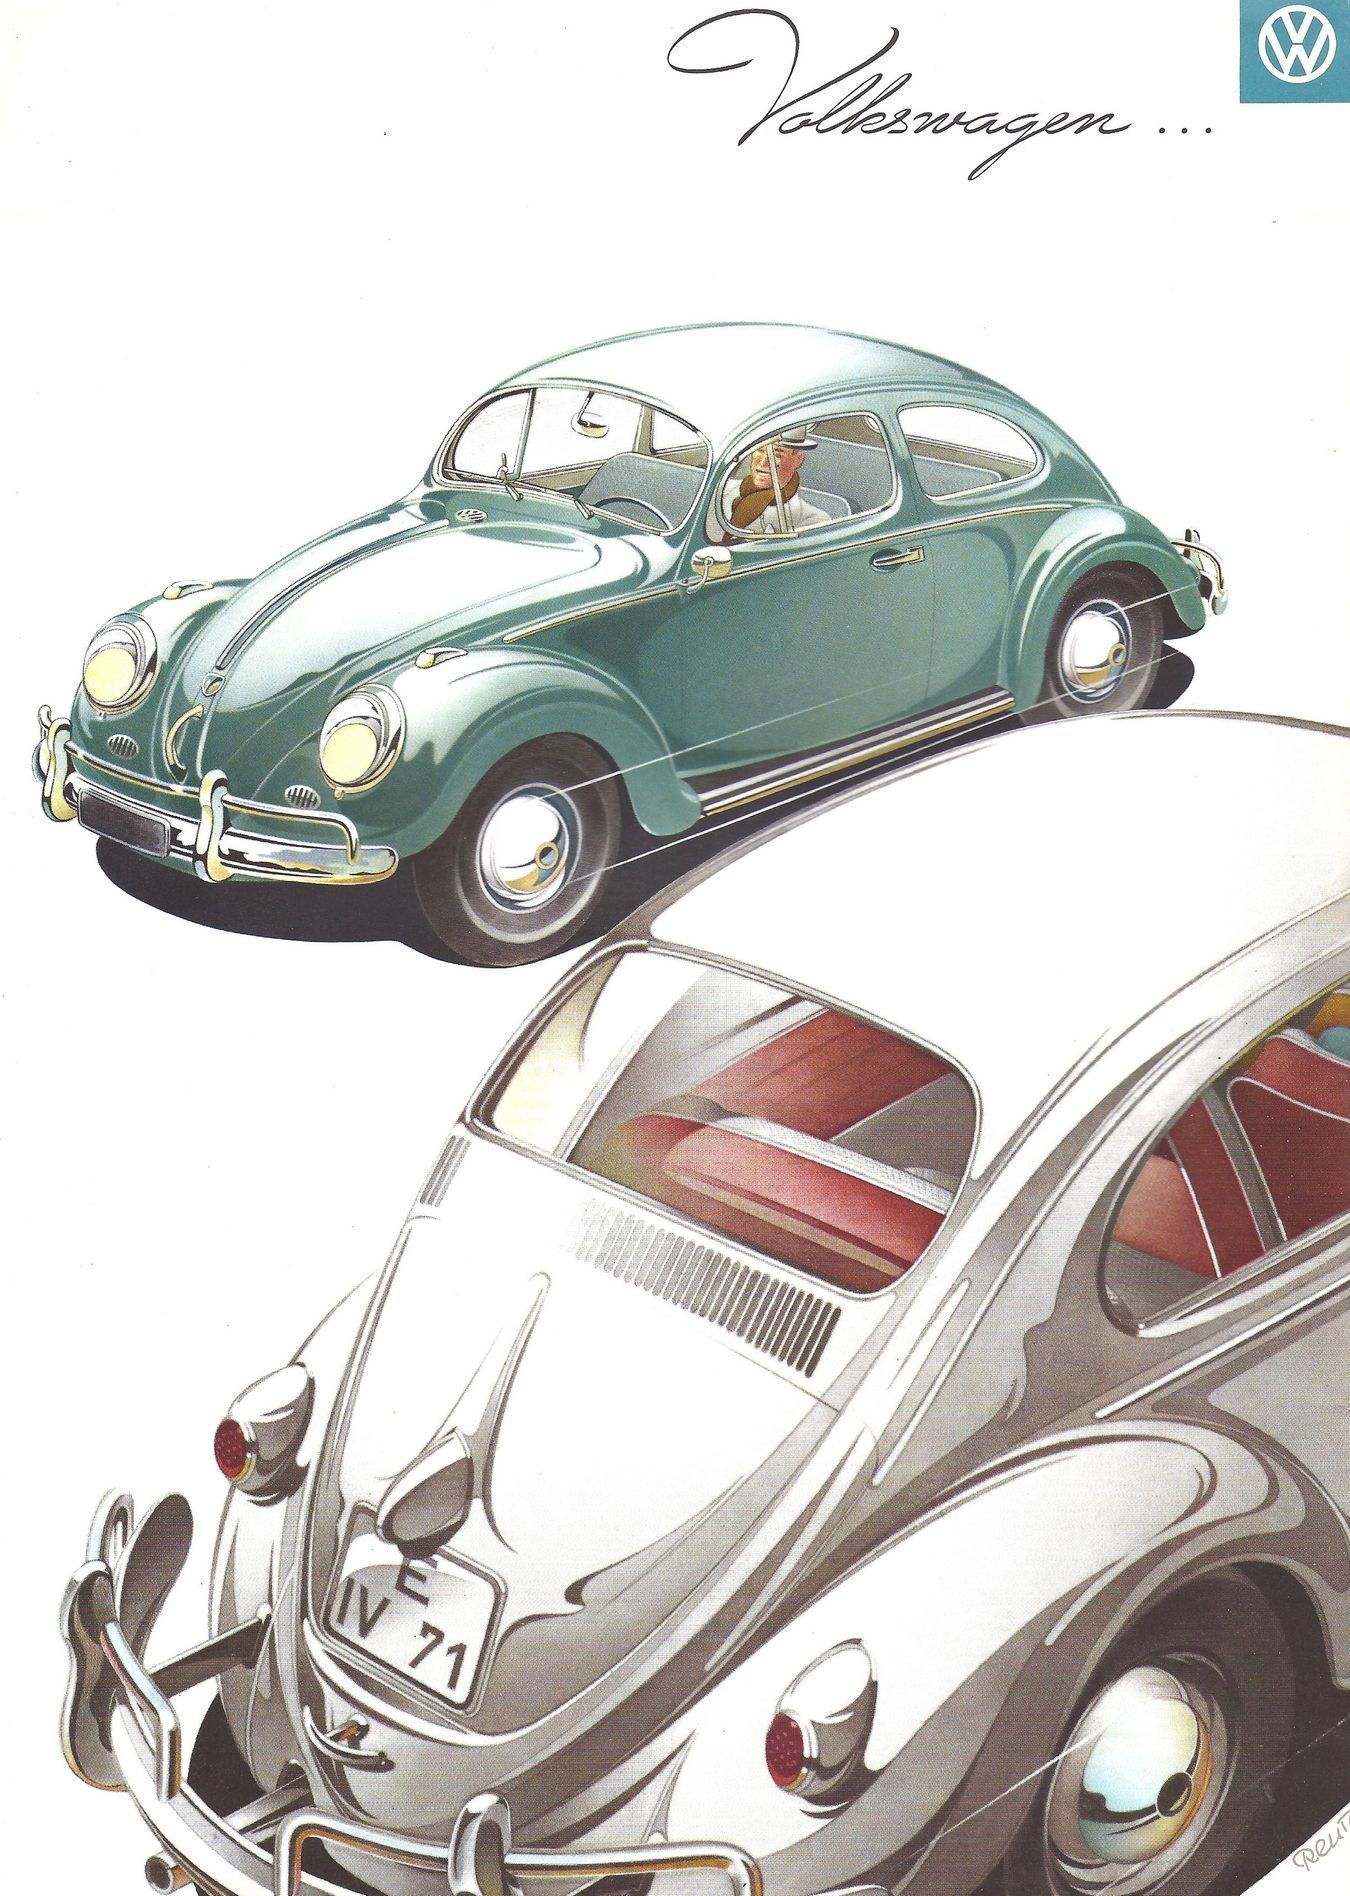 Heinrich Nordhoff a Volkswagen